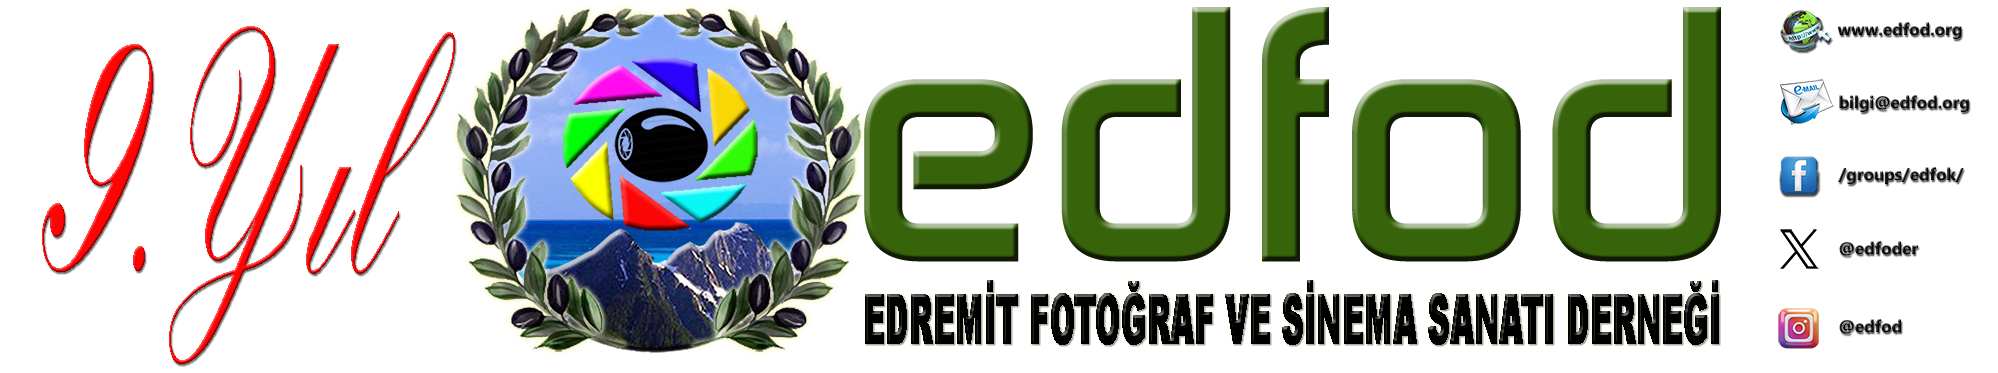 Edremit Fotoğraf  ve Sinema Sanatı Derneği Resmi Web Sitesi